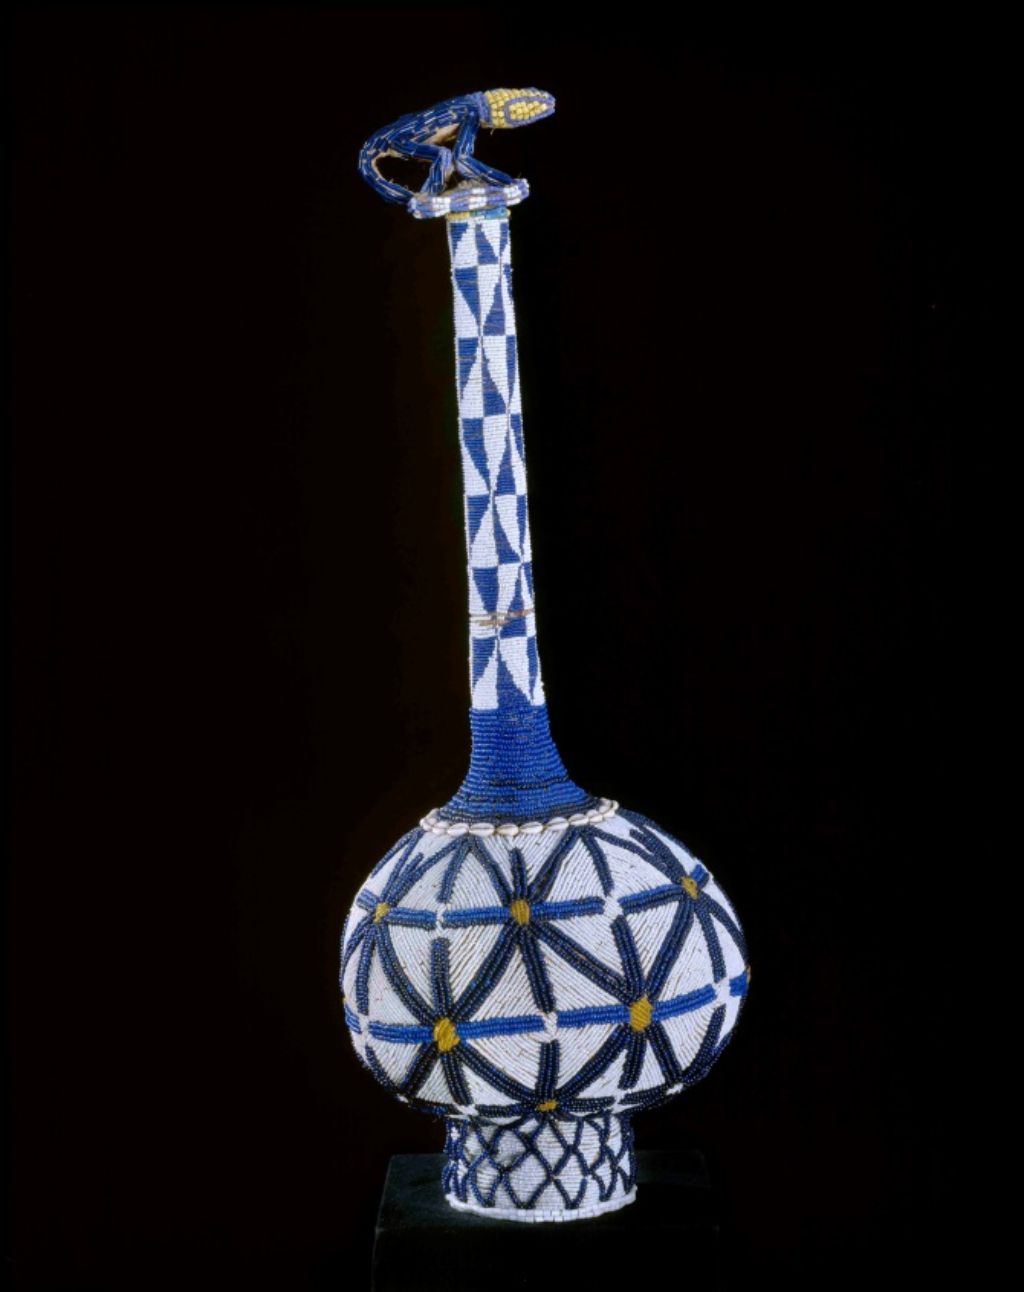 Diese verzierte Kalebasse ist ein königliches Prestigeobjekt aus Kamerun, ein Geschenk von König Njoya an Missionarin Anna Rein-Wuhrmann